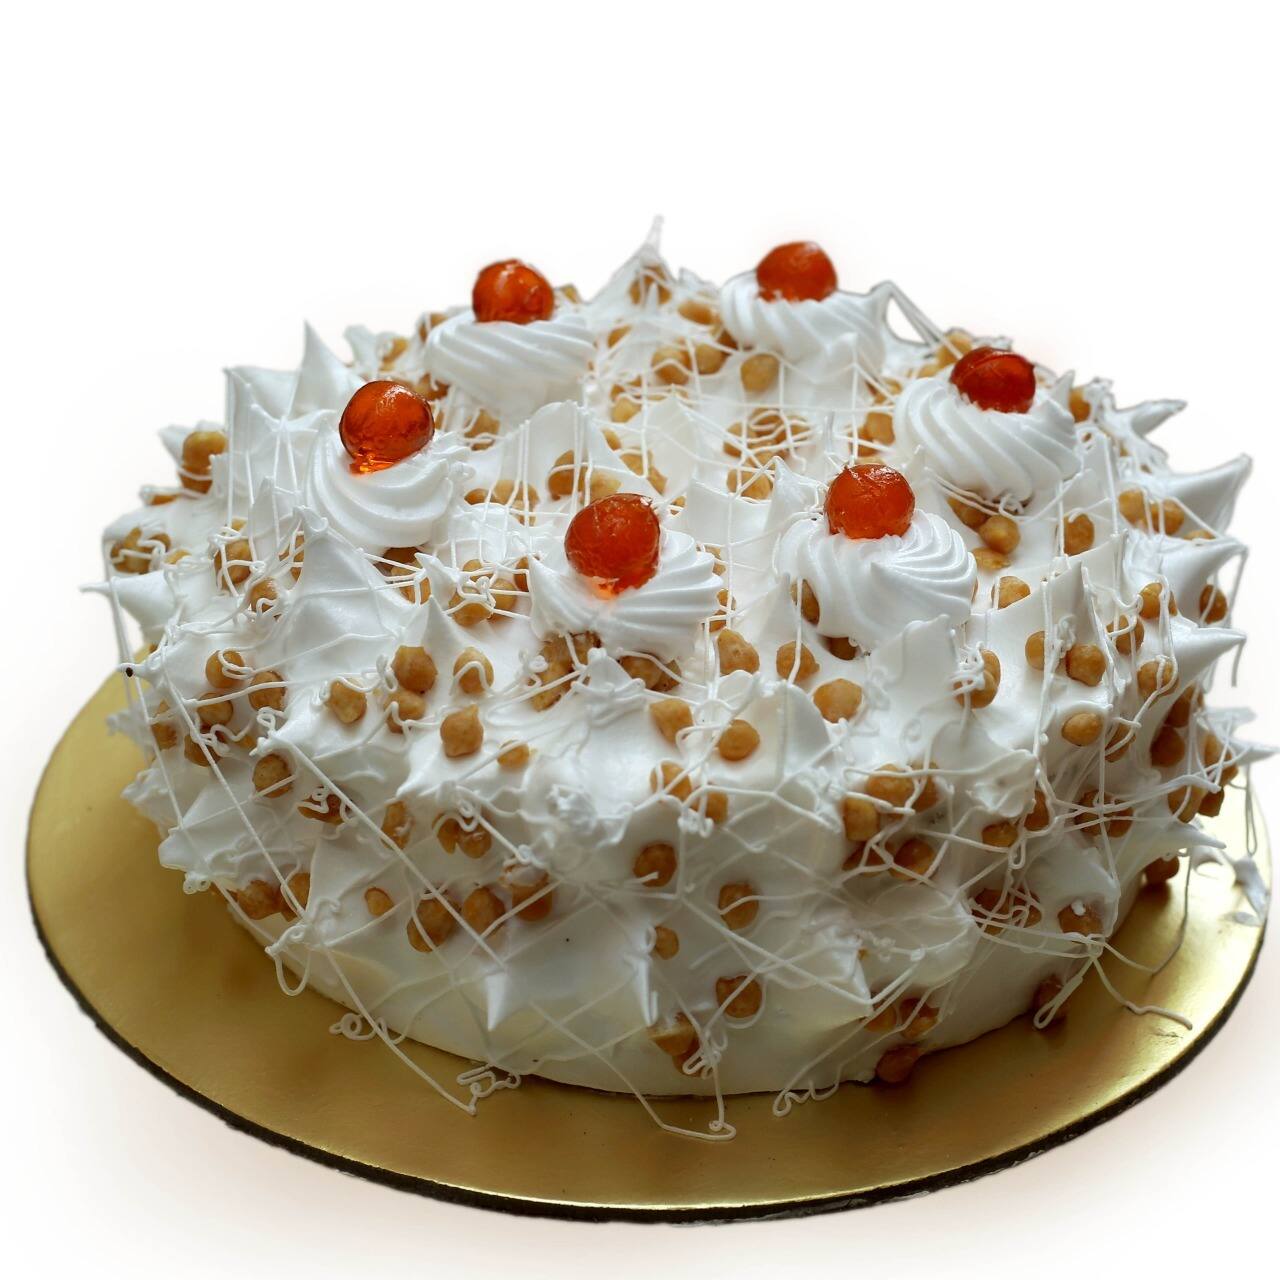 The Cake Avenue SWEETS & SNACKS - Cake shop - Amravati - Maharashtra |  Yappe.in